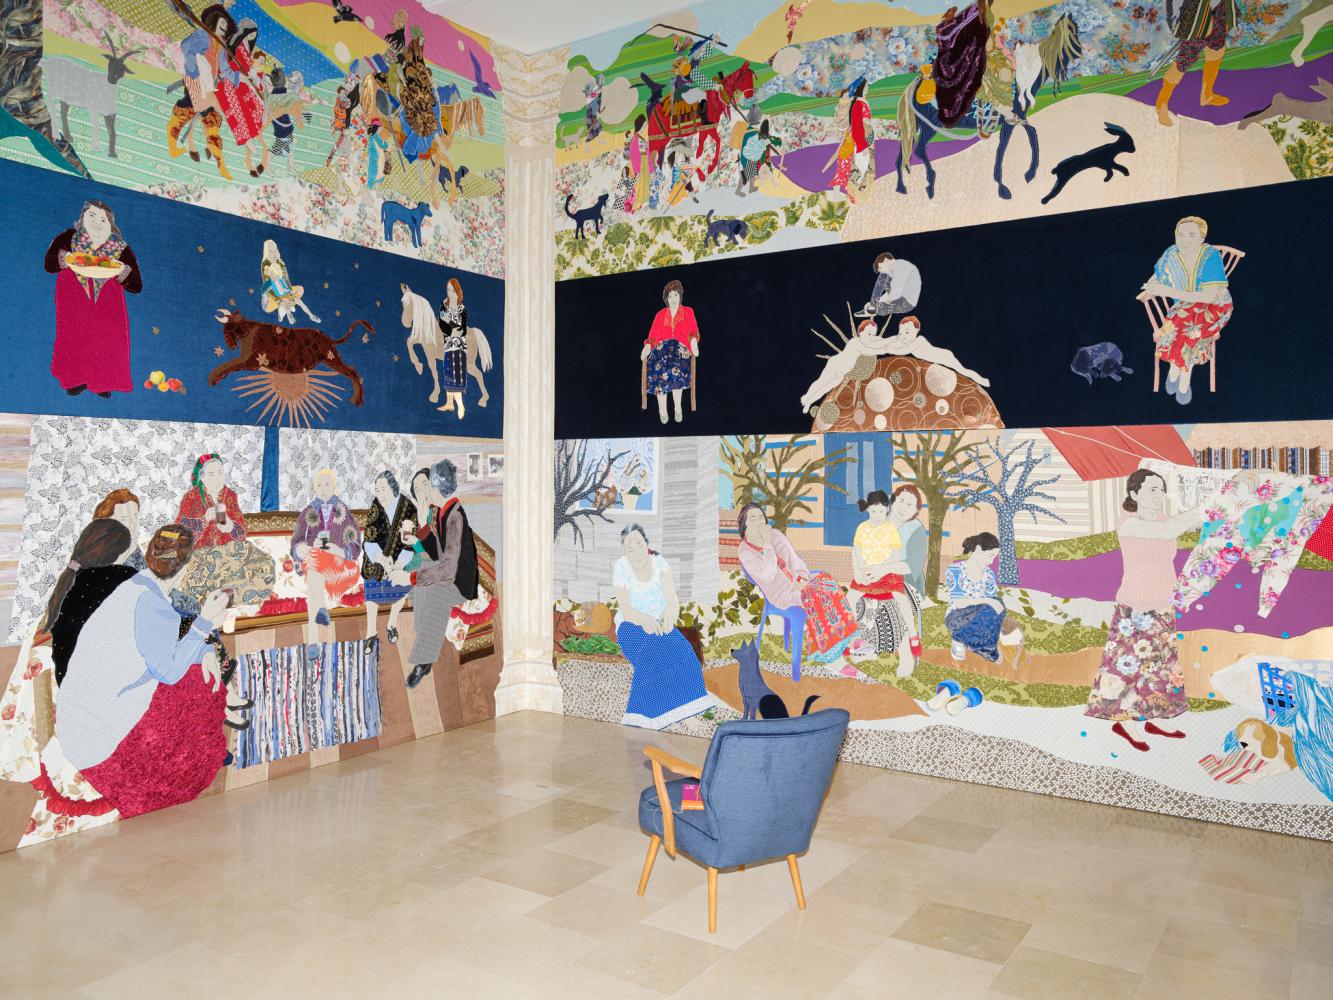 Allegorisch: Małgorzata Mirga-Tas zeigt im polnischen Pavillon Szenen aus der Geschichte und dem Alltag der Roma als textile Tableaus. Ansicht Venedig-Biennale 2022